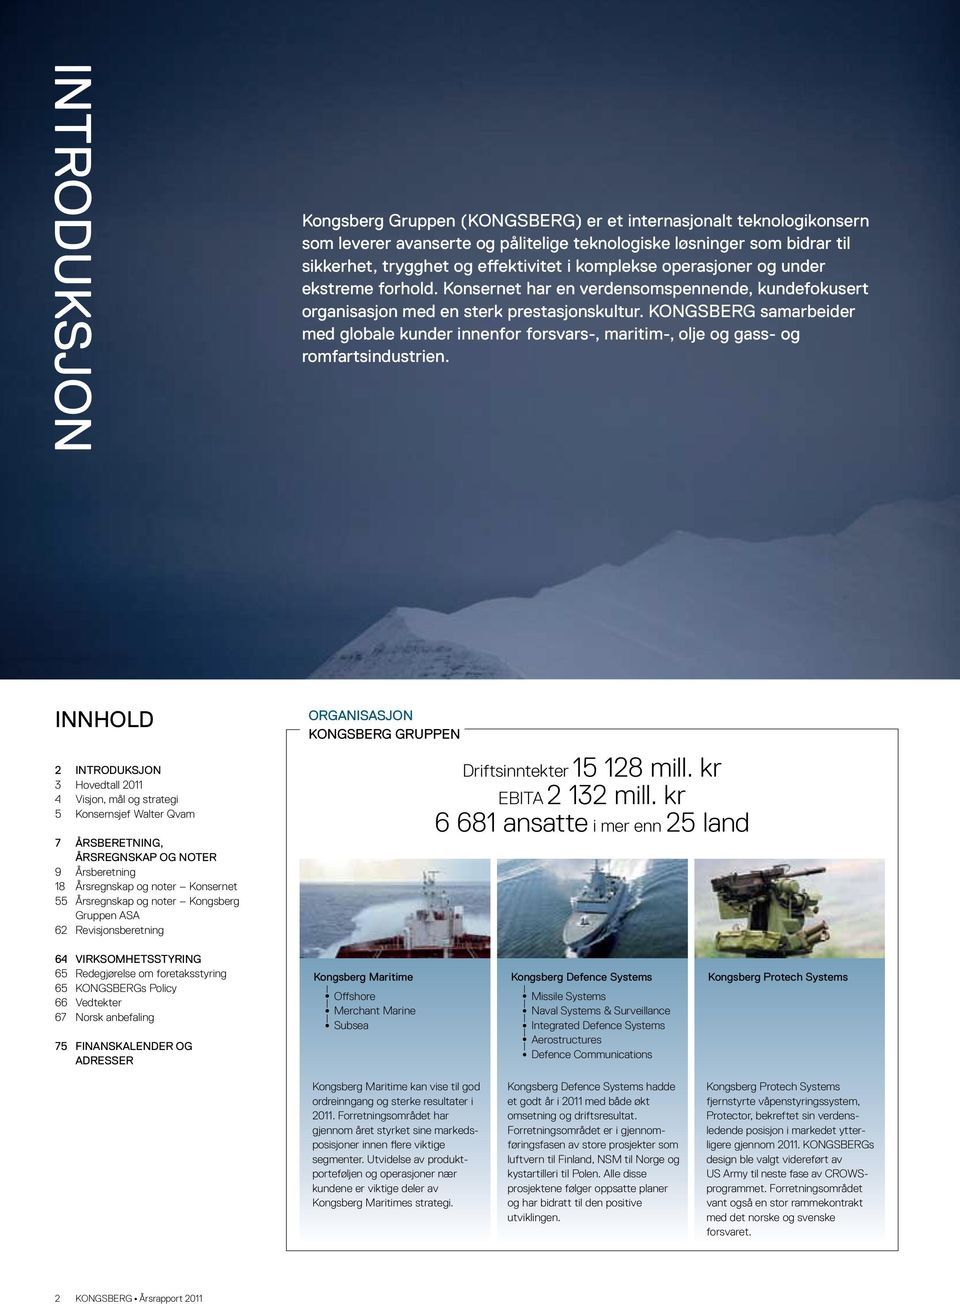 KONGSBERG samarbeider med globale kunder innenfor forsvars-, maritim-, olje og gass- og romfartsindustrien.